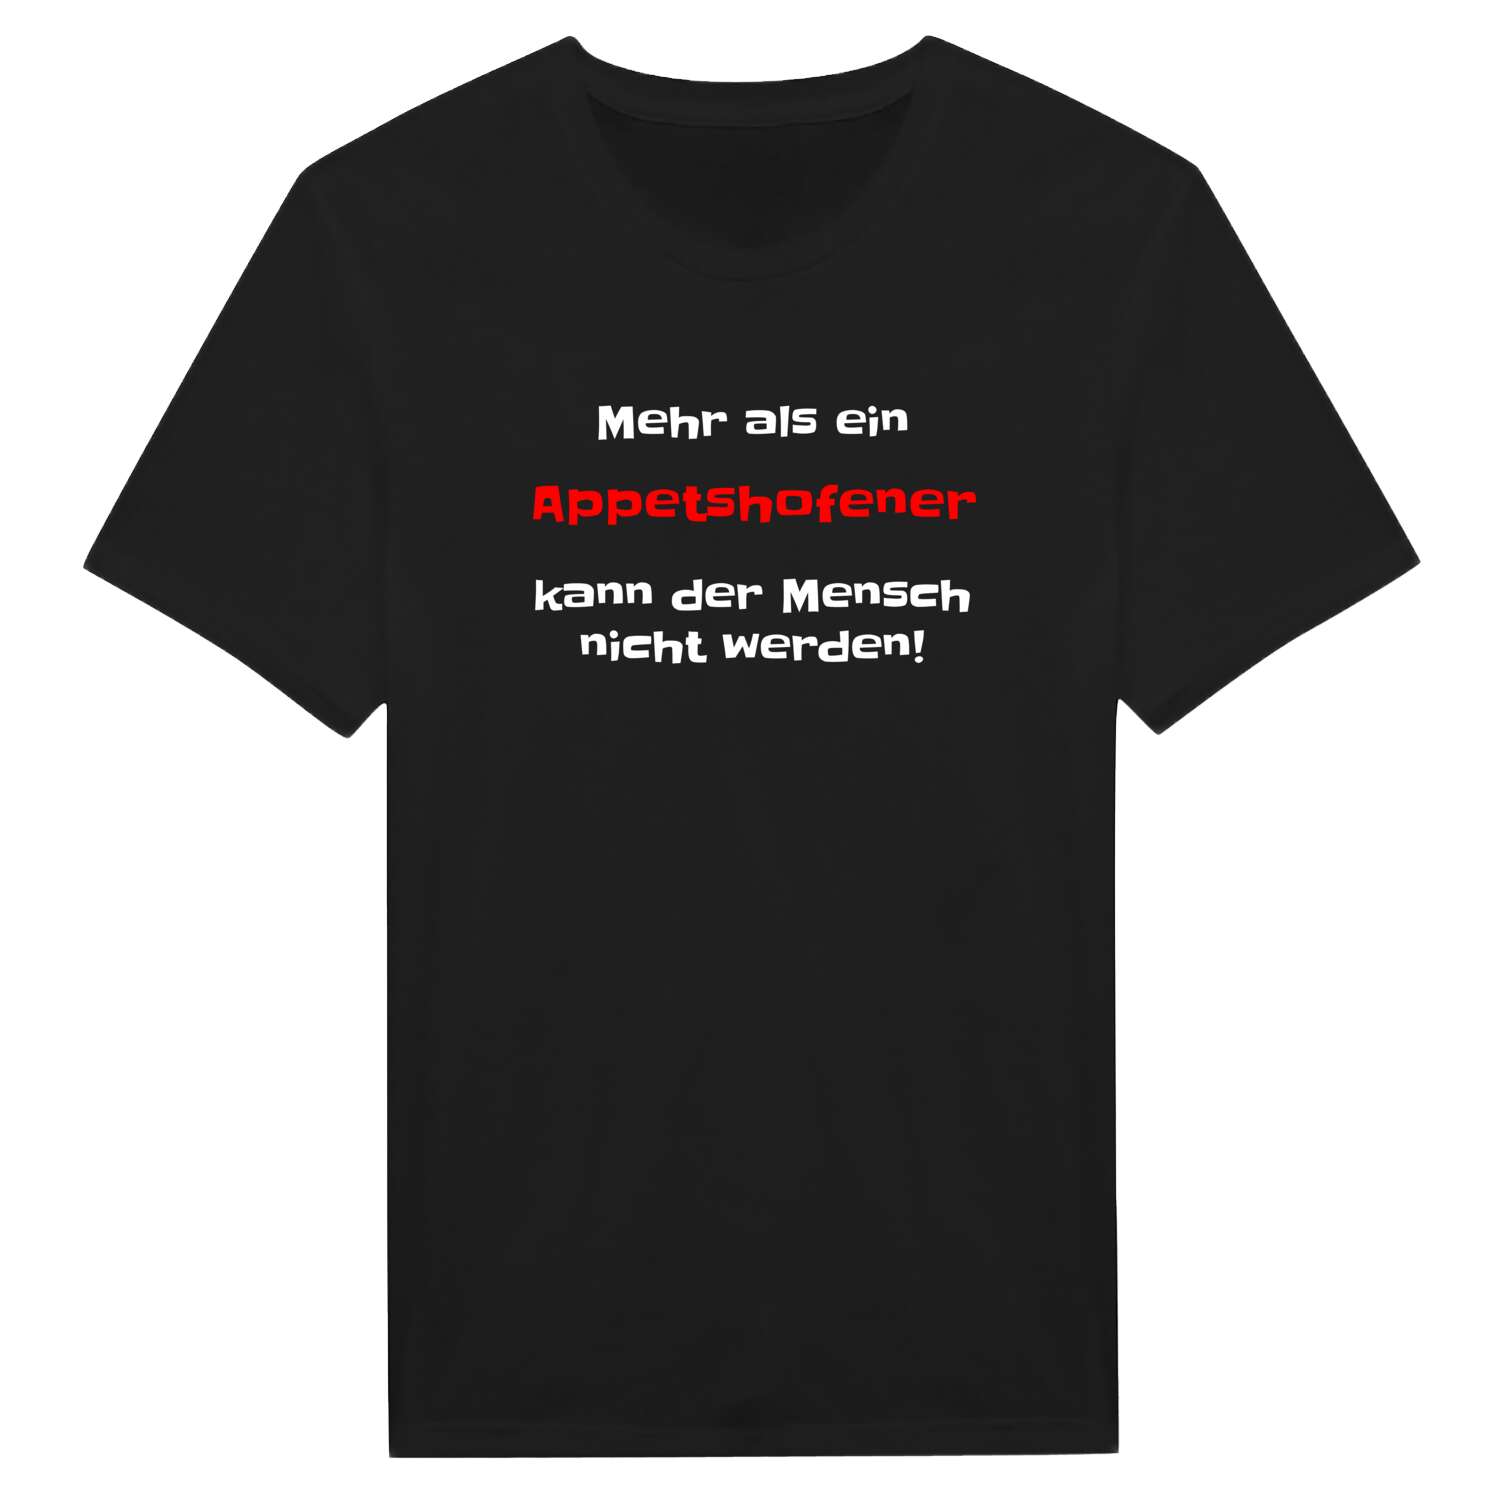 Appetshofen T-Shirt »Mehr als ein«